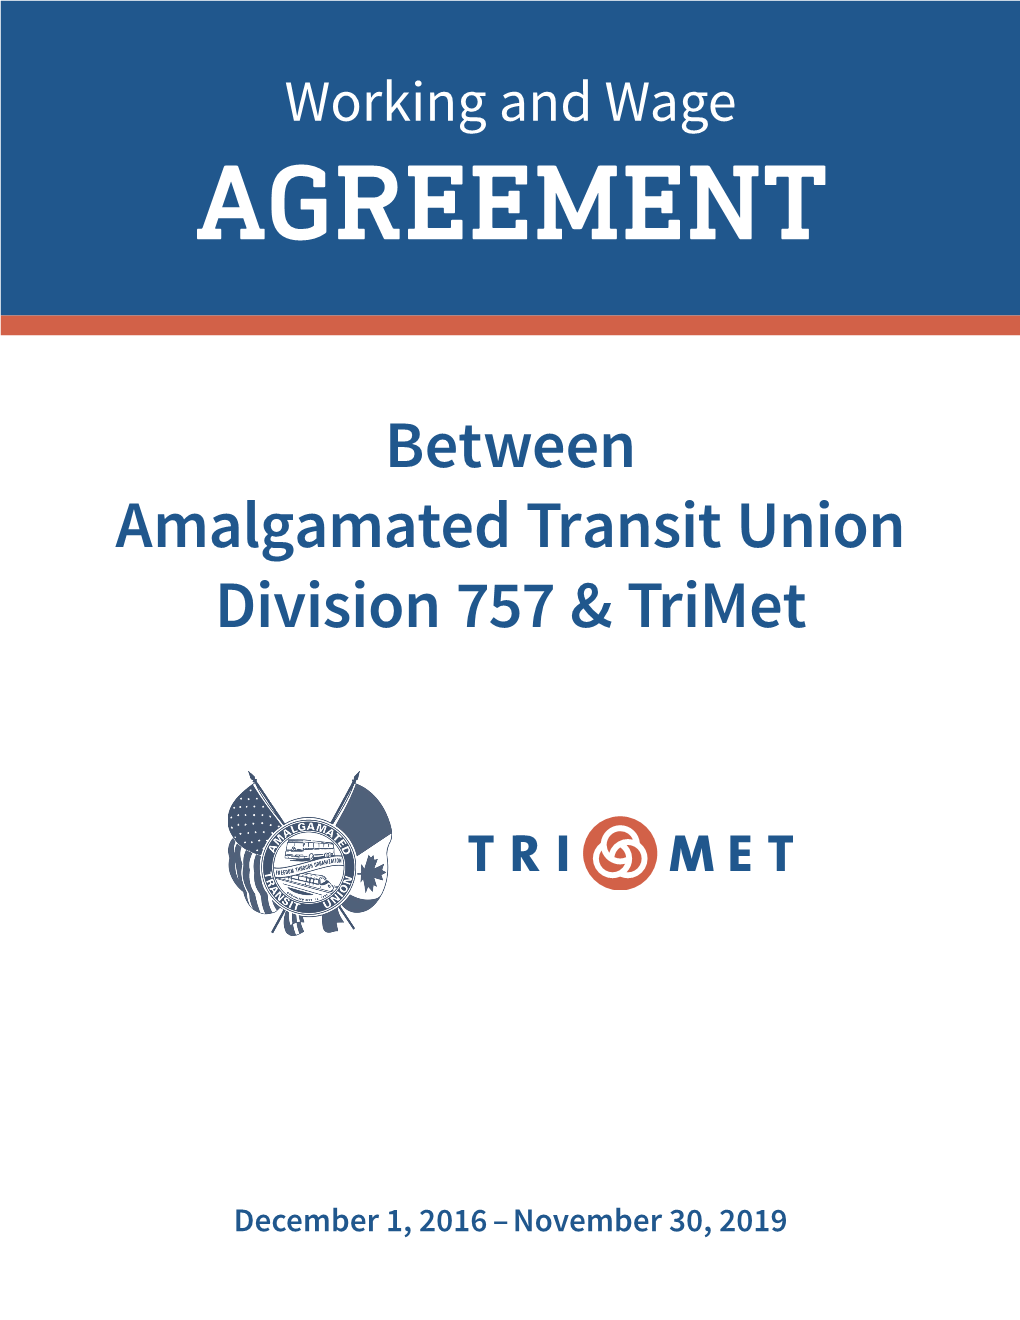 Between Amalgamated Transit Union Division 757 & Trimet